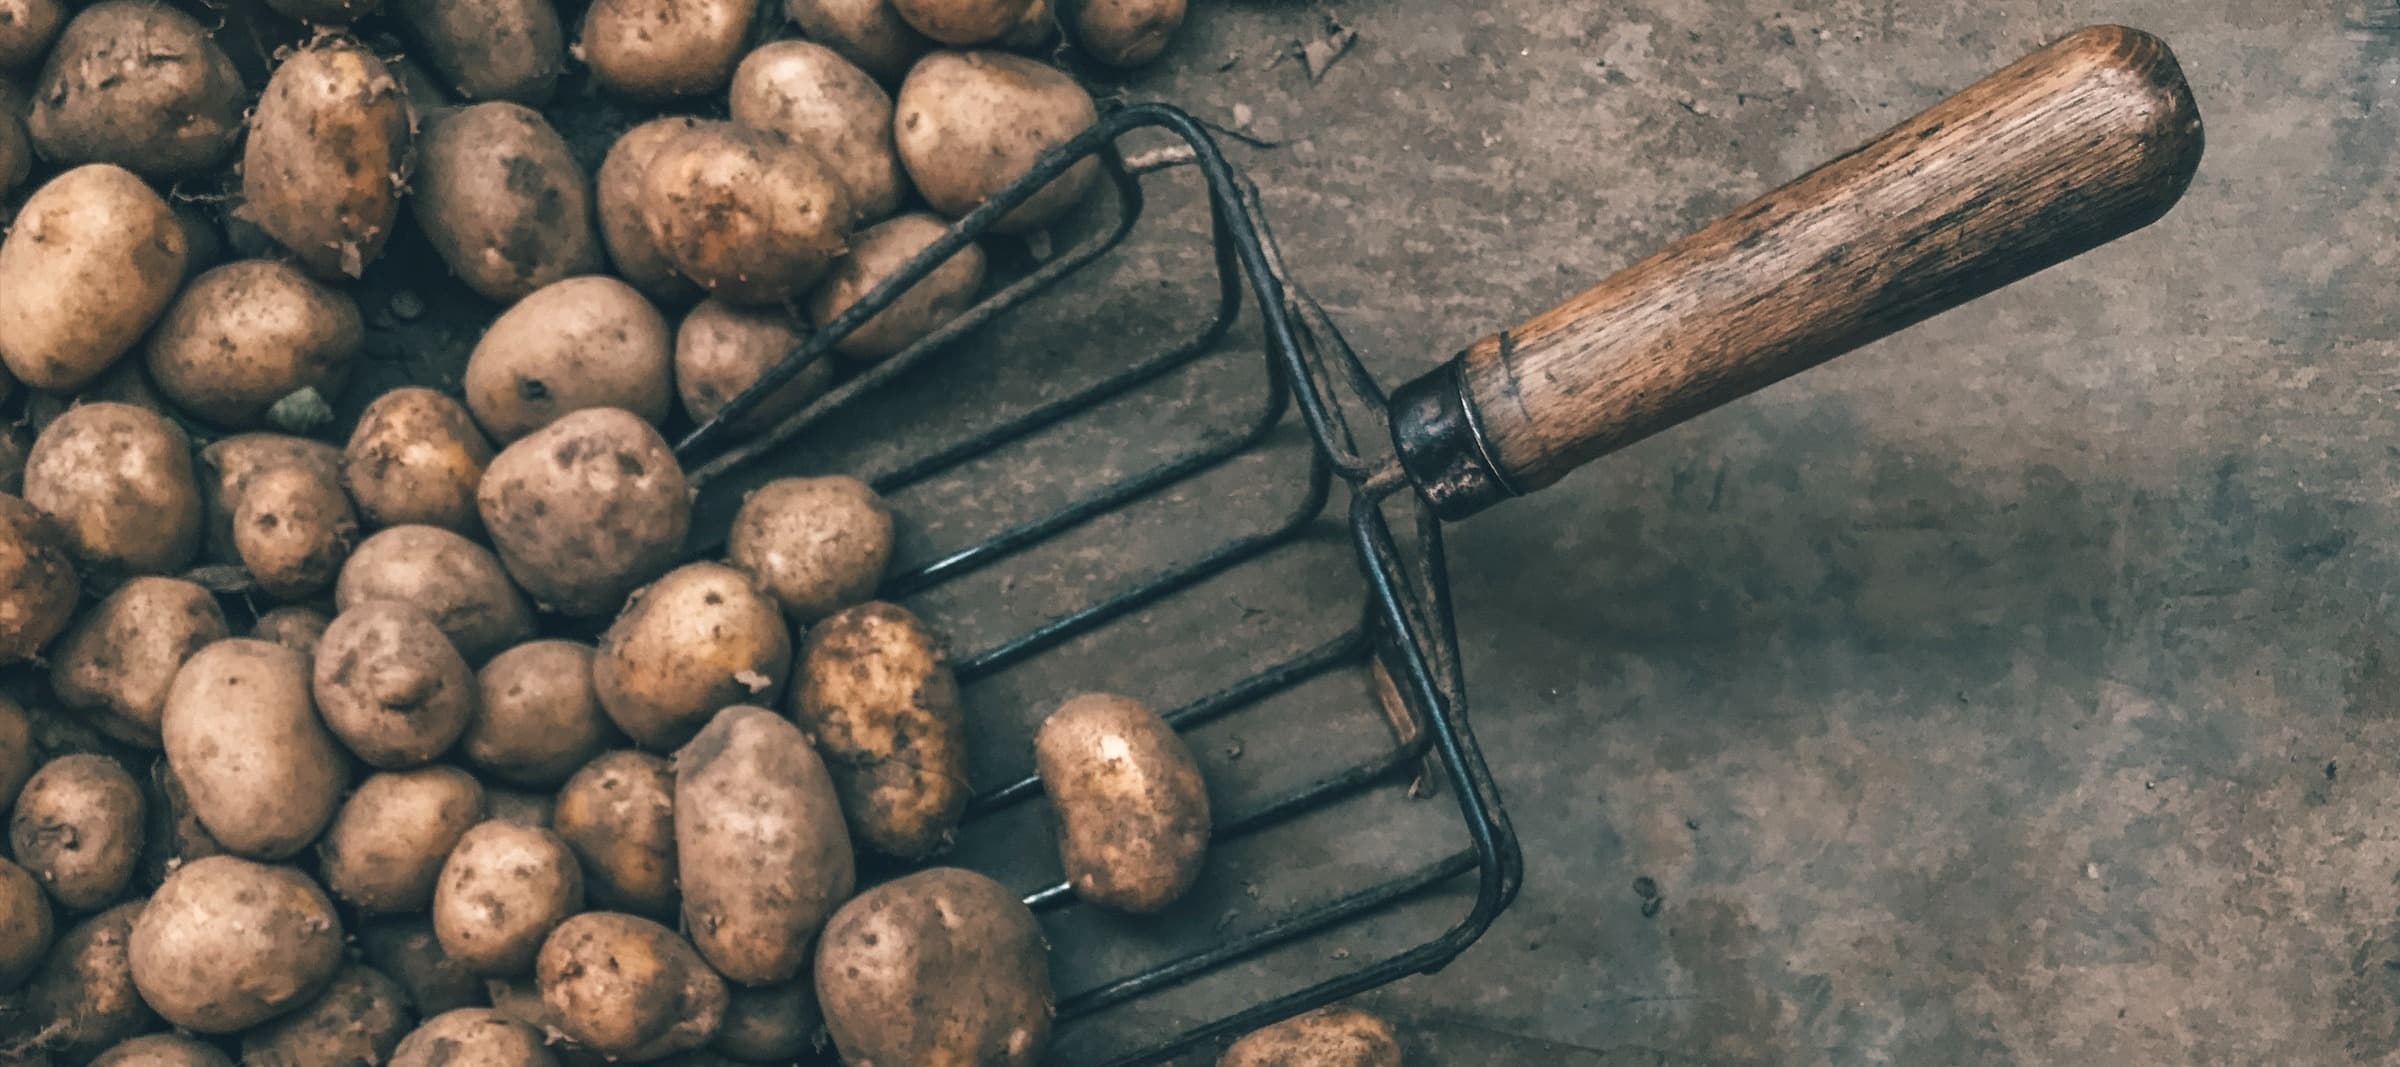 Фото новости: "Правительство сократило субсидии на производство картофеля и овощей"